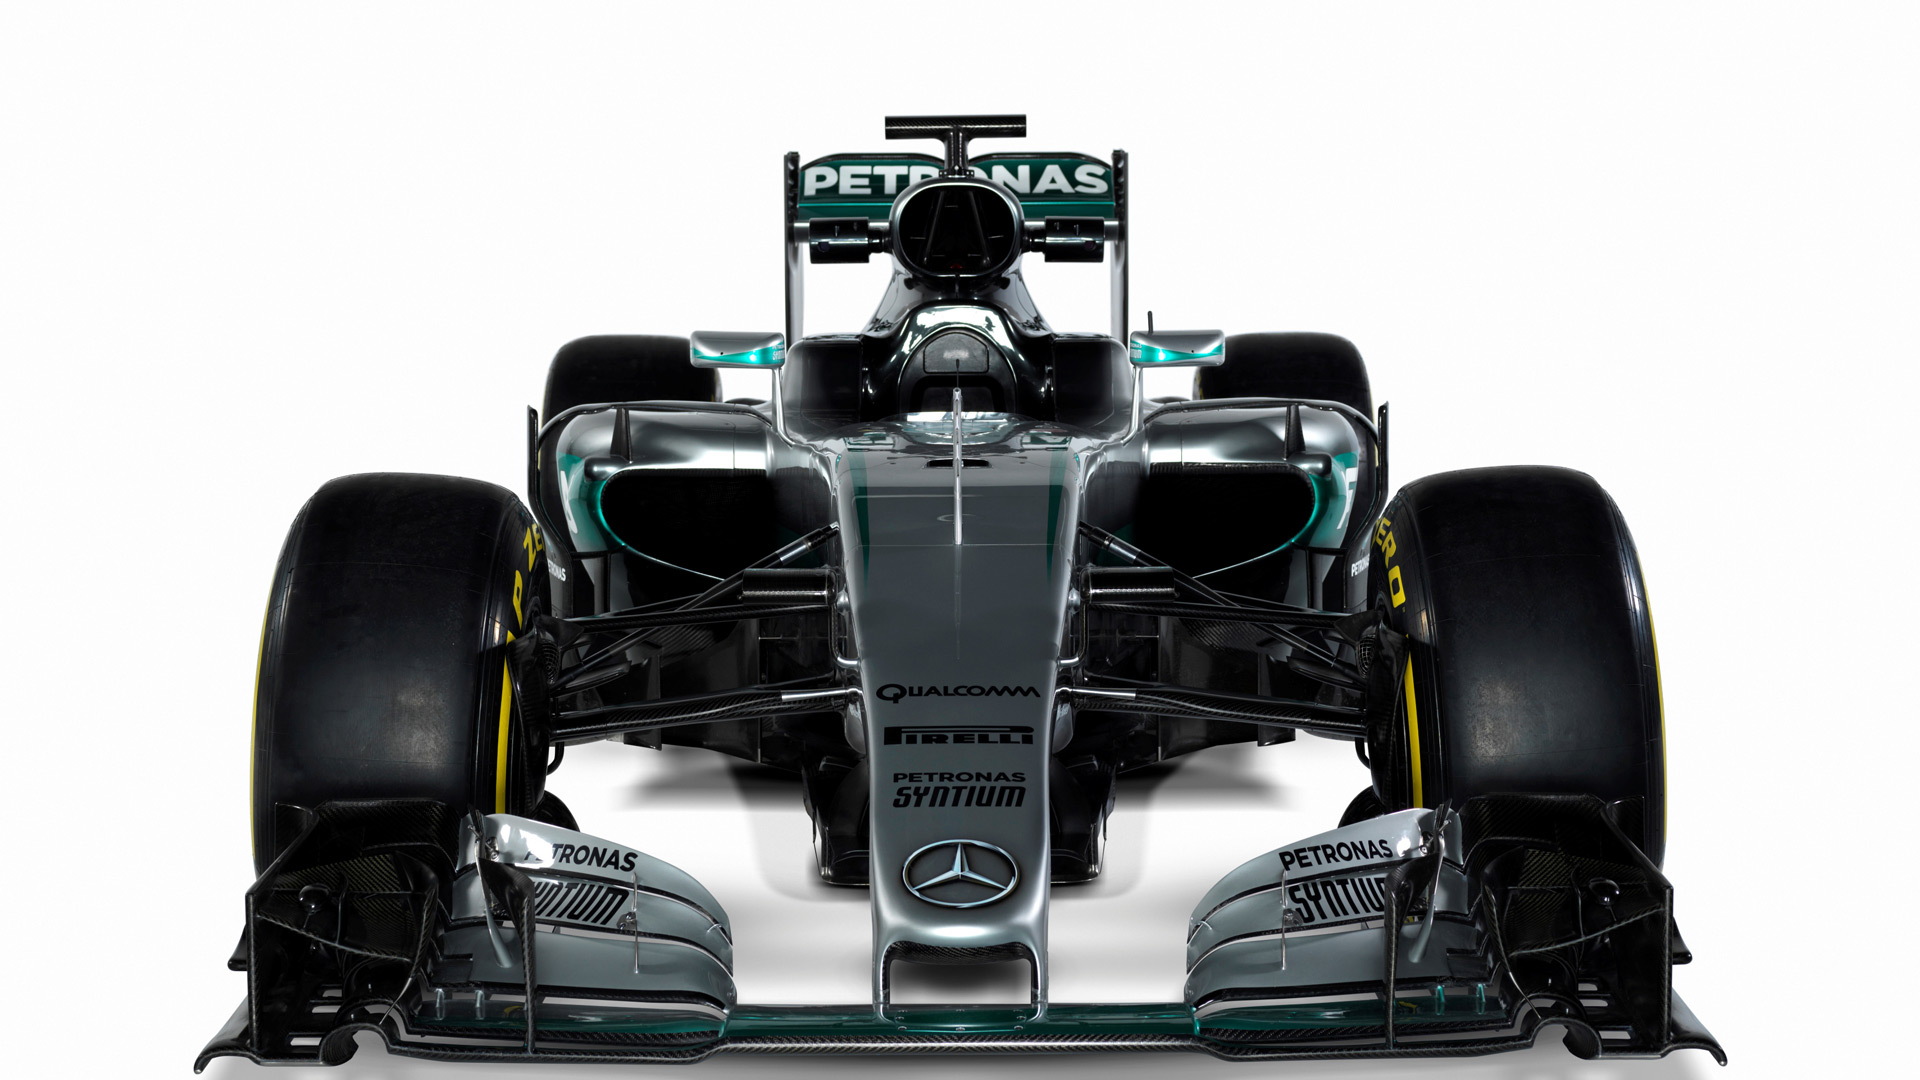 Mercedes AMG W07 Hybrid 2016 Formula One car